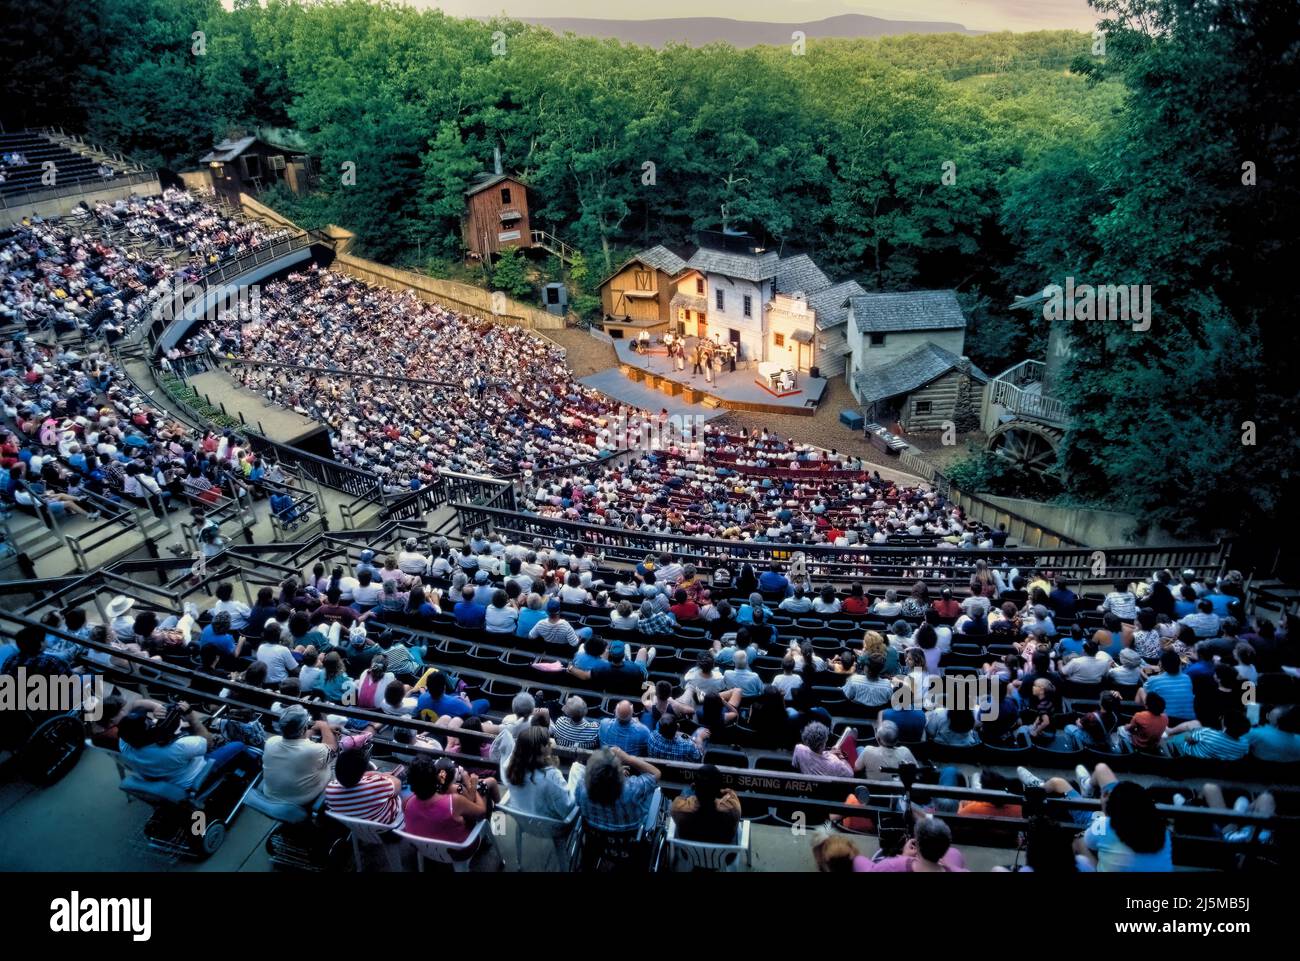 Ein Sommerabendkonzert im Echo Hollow Amphitheater in Silver Dollar City in der Nähe von Branson, Missouri, bietet Unterhaltung für Hunderte. Stockfoto